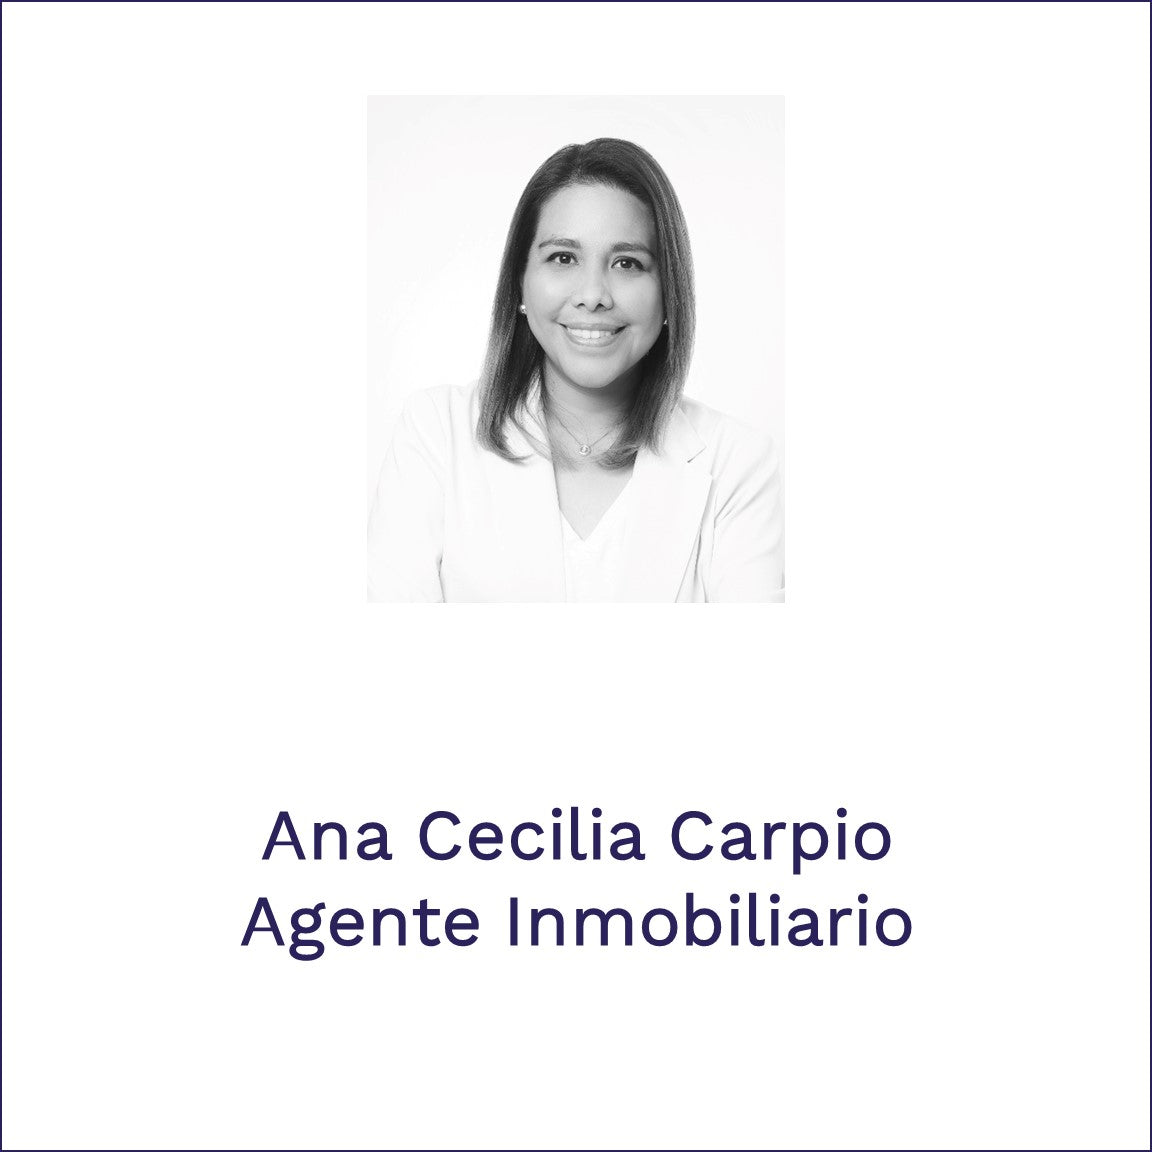 Ana Cecilia Carpio | Agente Inmobiliario